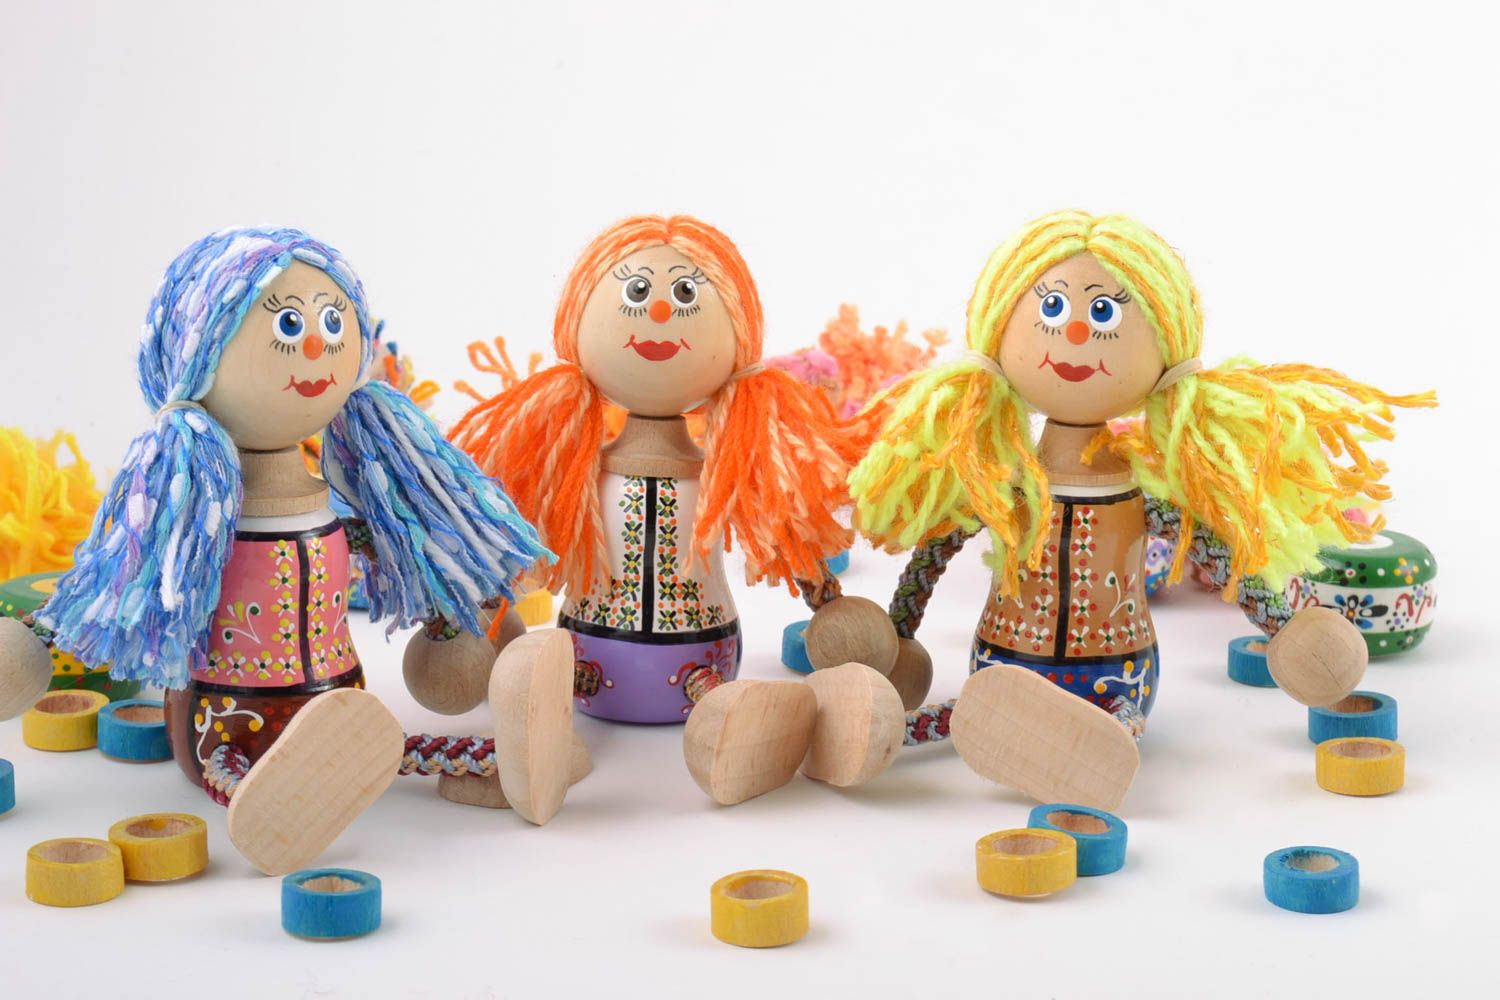 Деревянные эко игрушки подружки 3 штуки расписанные красками ручной работы фото 1